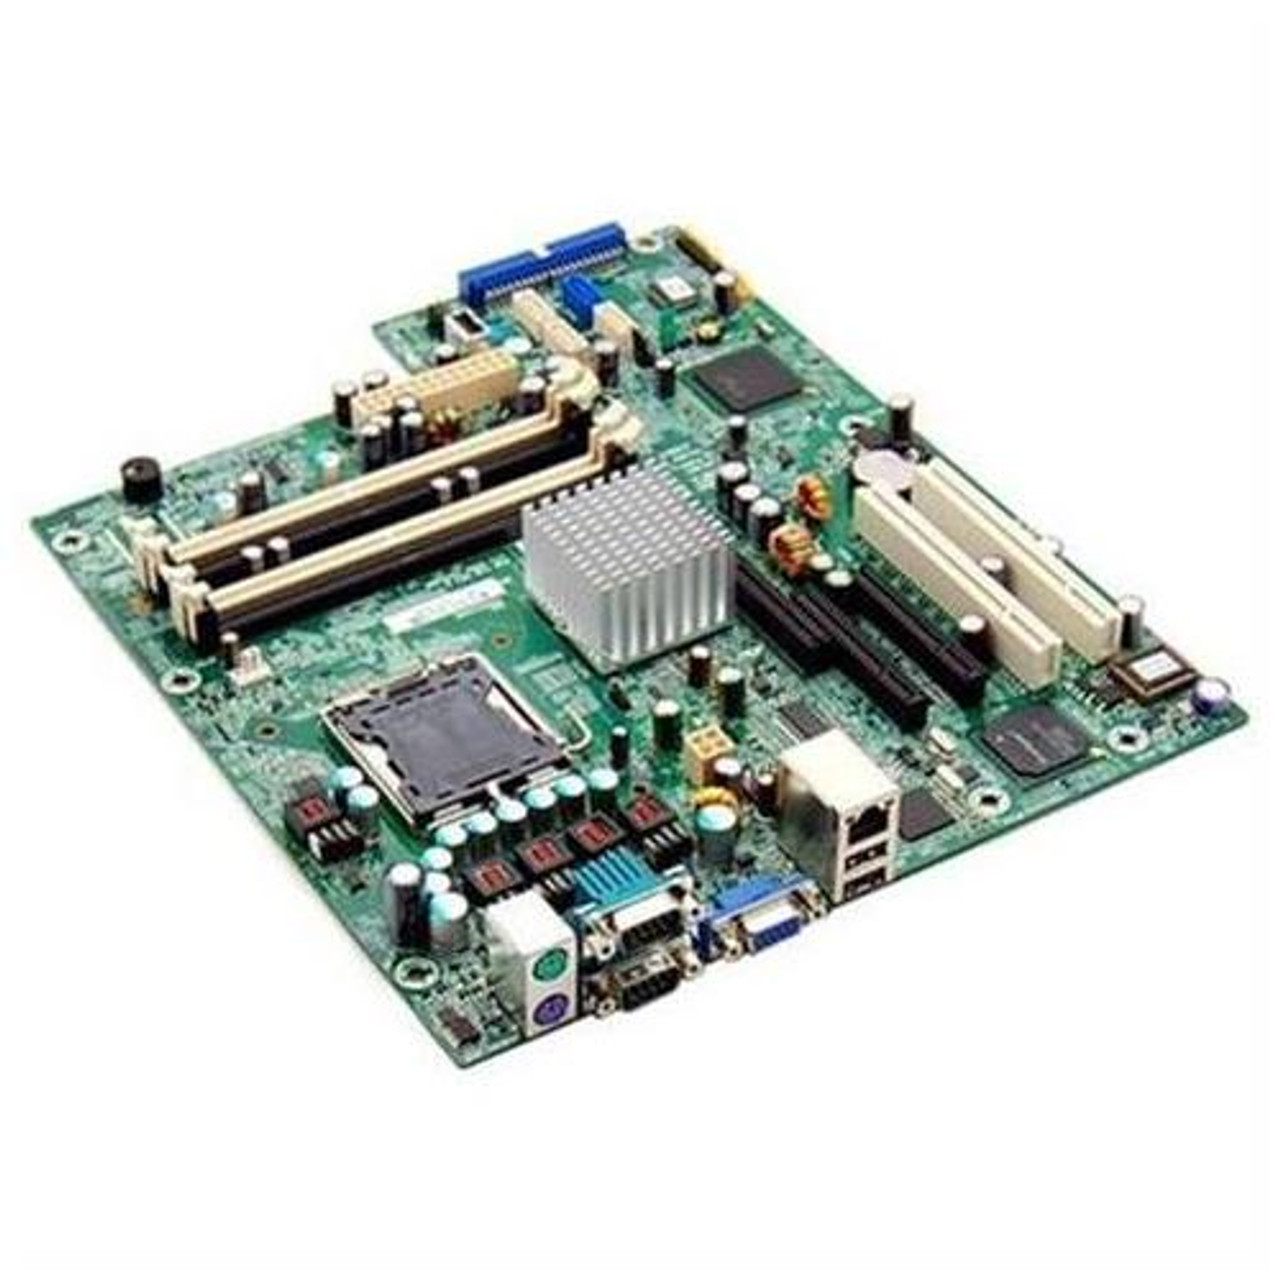 Mbs Acer Amd 690v Sb600 Chipset Athlon 64 X2 Dual Core Processors Support Socket Am2 Desktop Motherboard For Aspire M1100 Refurbished